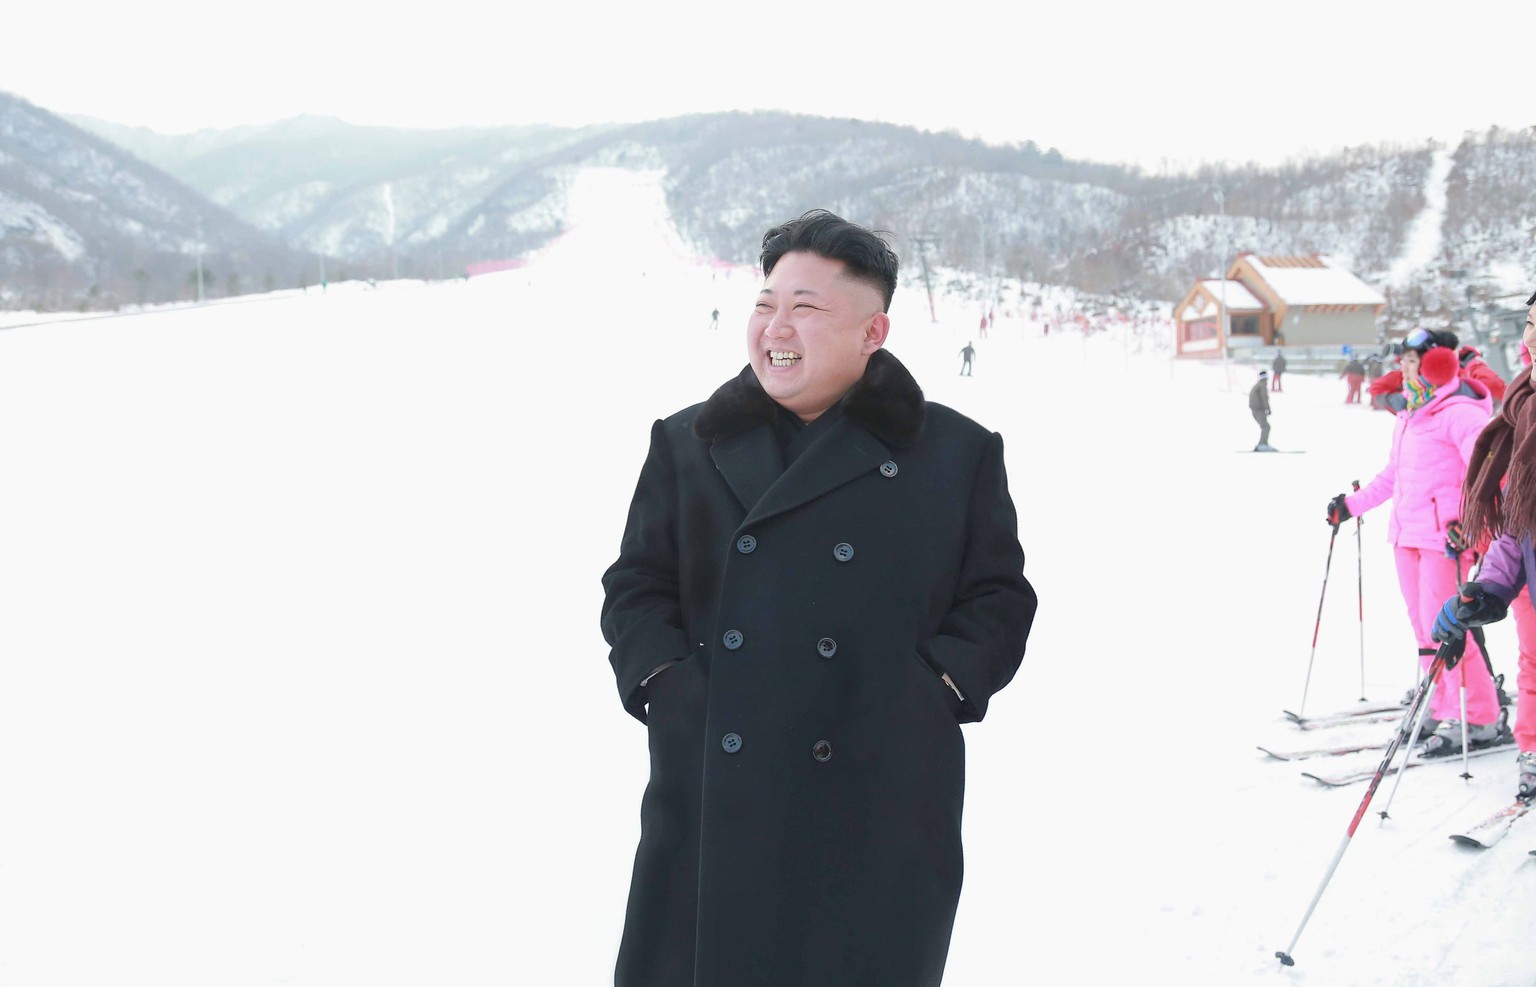 russen machen jetzt skiferien in nordkorea – diese drei dinge gefallen ihnen besonders gut